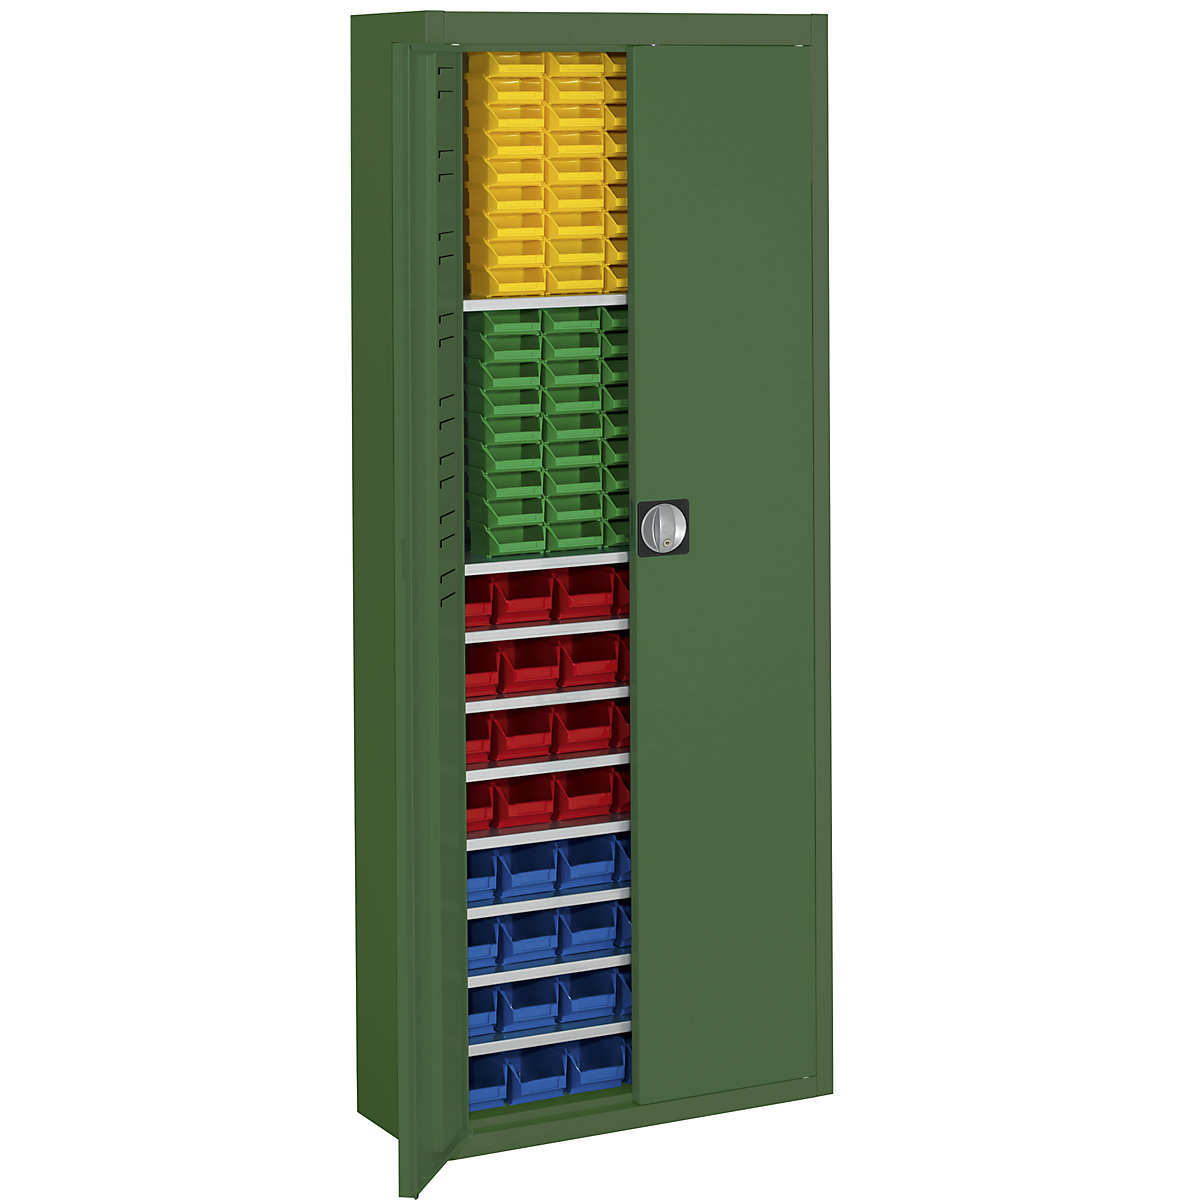 Skladiščna omara z odprtimi skladiščnimi posodami – mauser, VxŠxG 1740 x 680 x 280 mm, ena barva, zelena, 138 posod-12